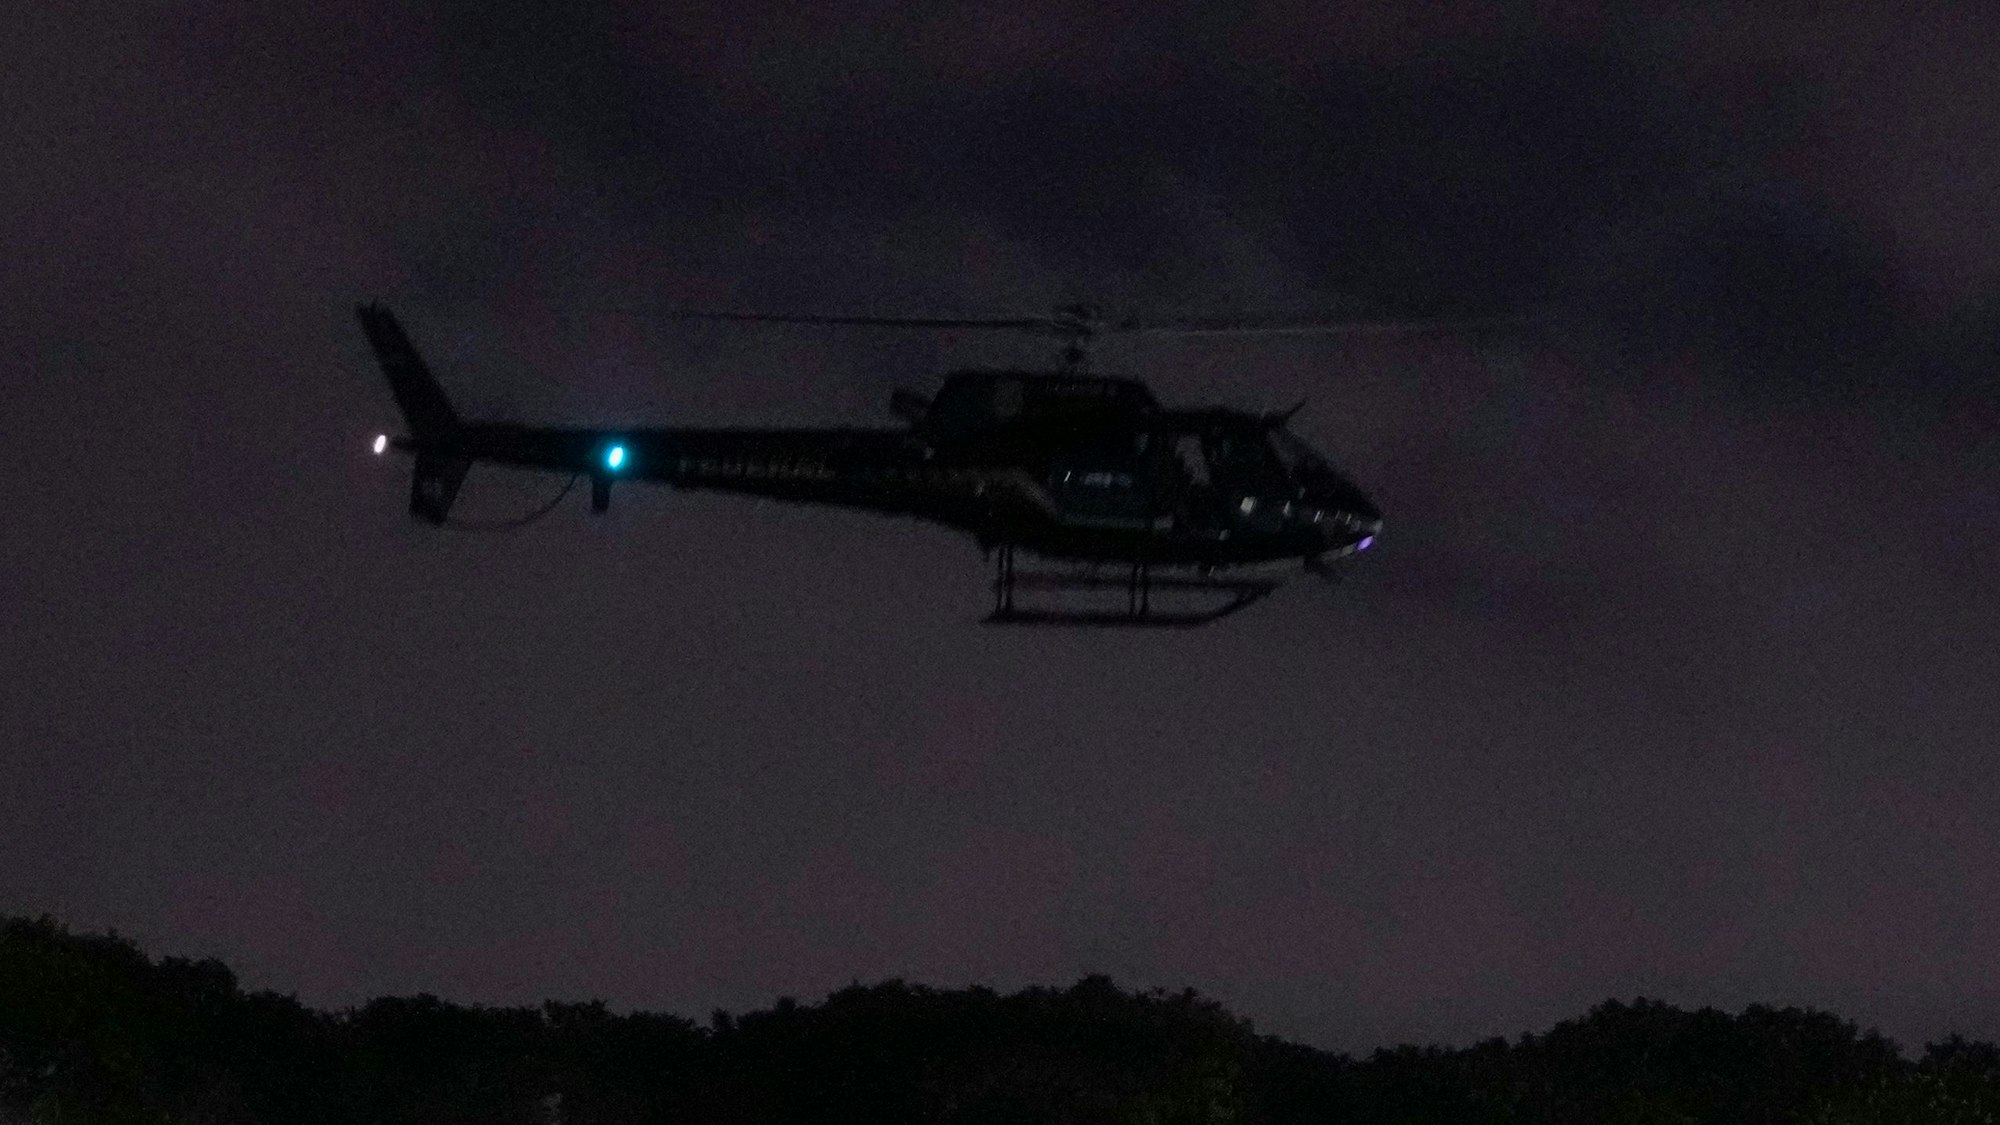 Ein Polizeihubschrauber fliegt in der Nacht über eine hügelige Landschaft.